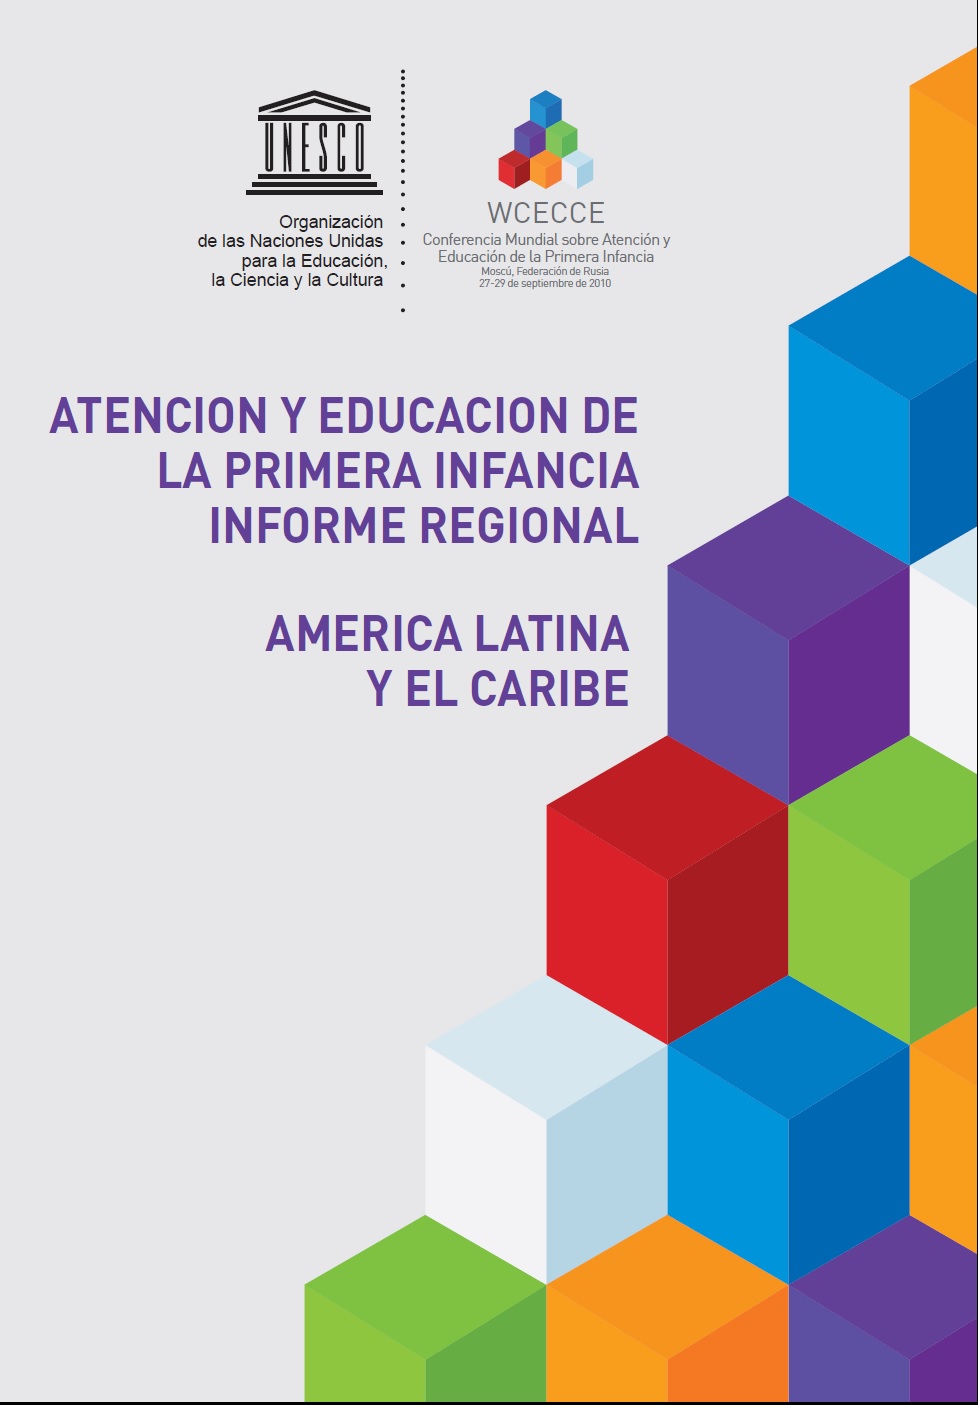 Atención y educación de la primera infancia: informe regional América Latina y el Caribe